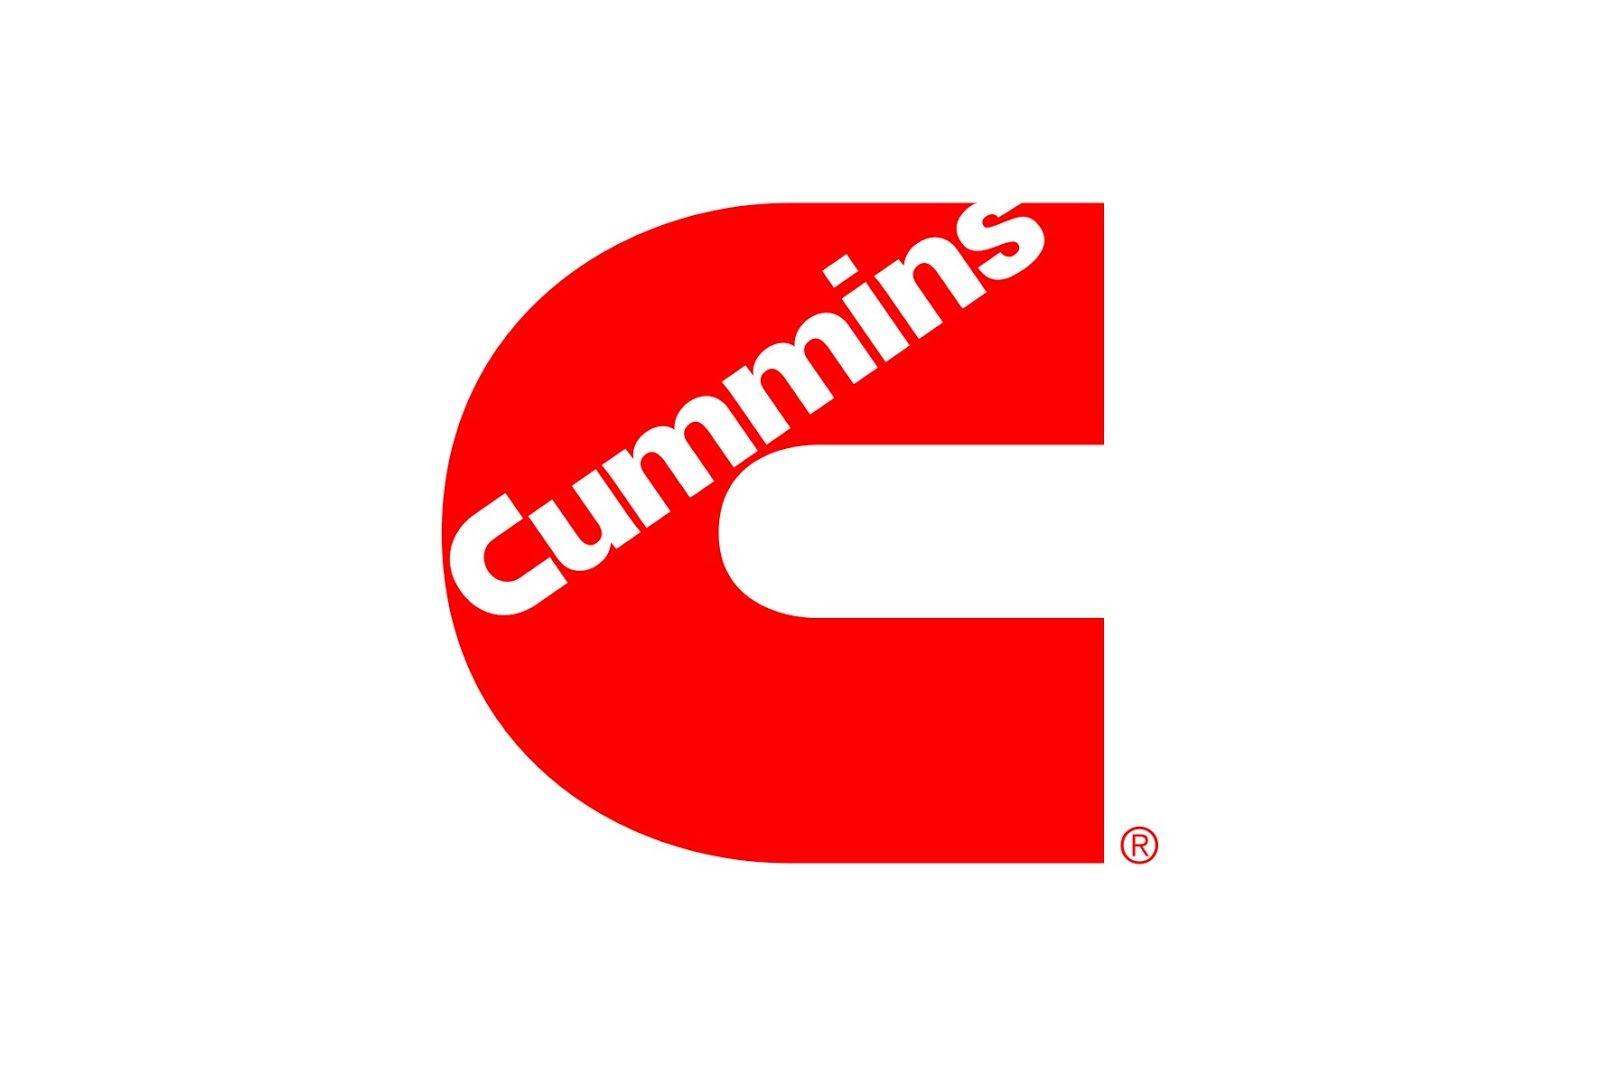 Red Cummins Logo - logo-cummins - Quest Power International